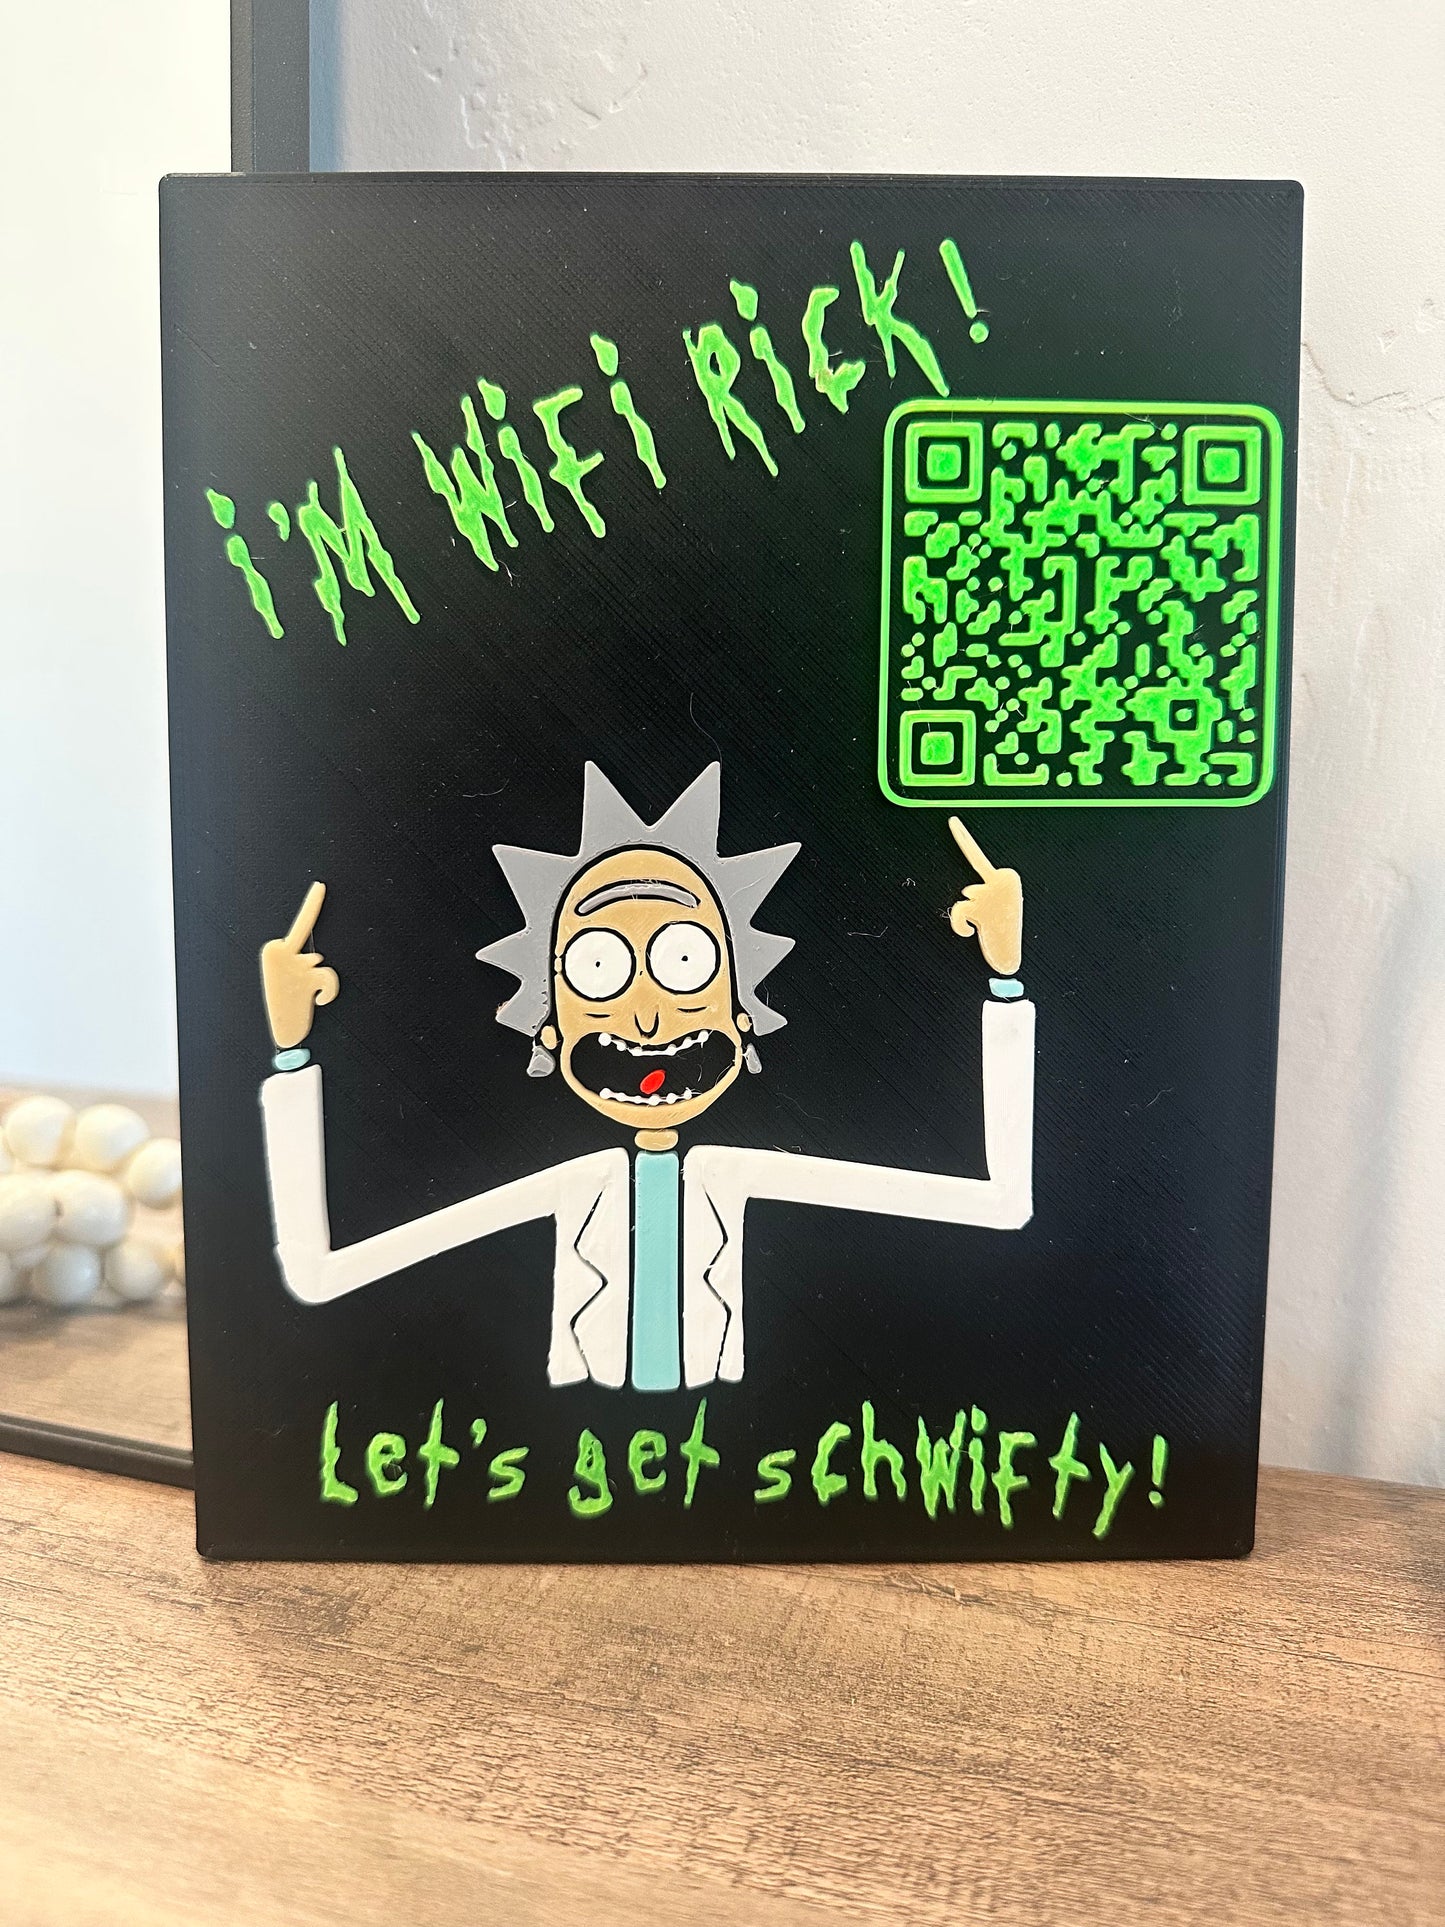 WiFi Network QR Code - I’m WiFi Rick!